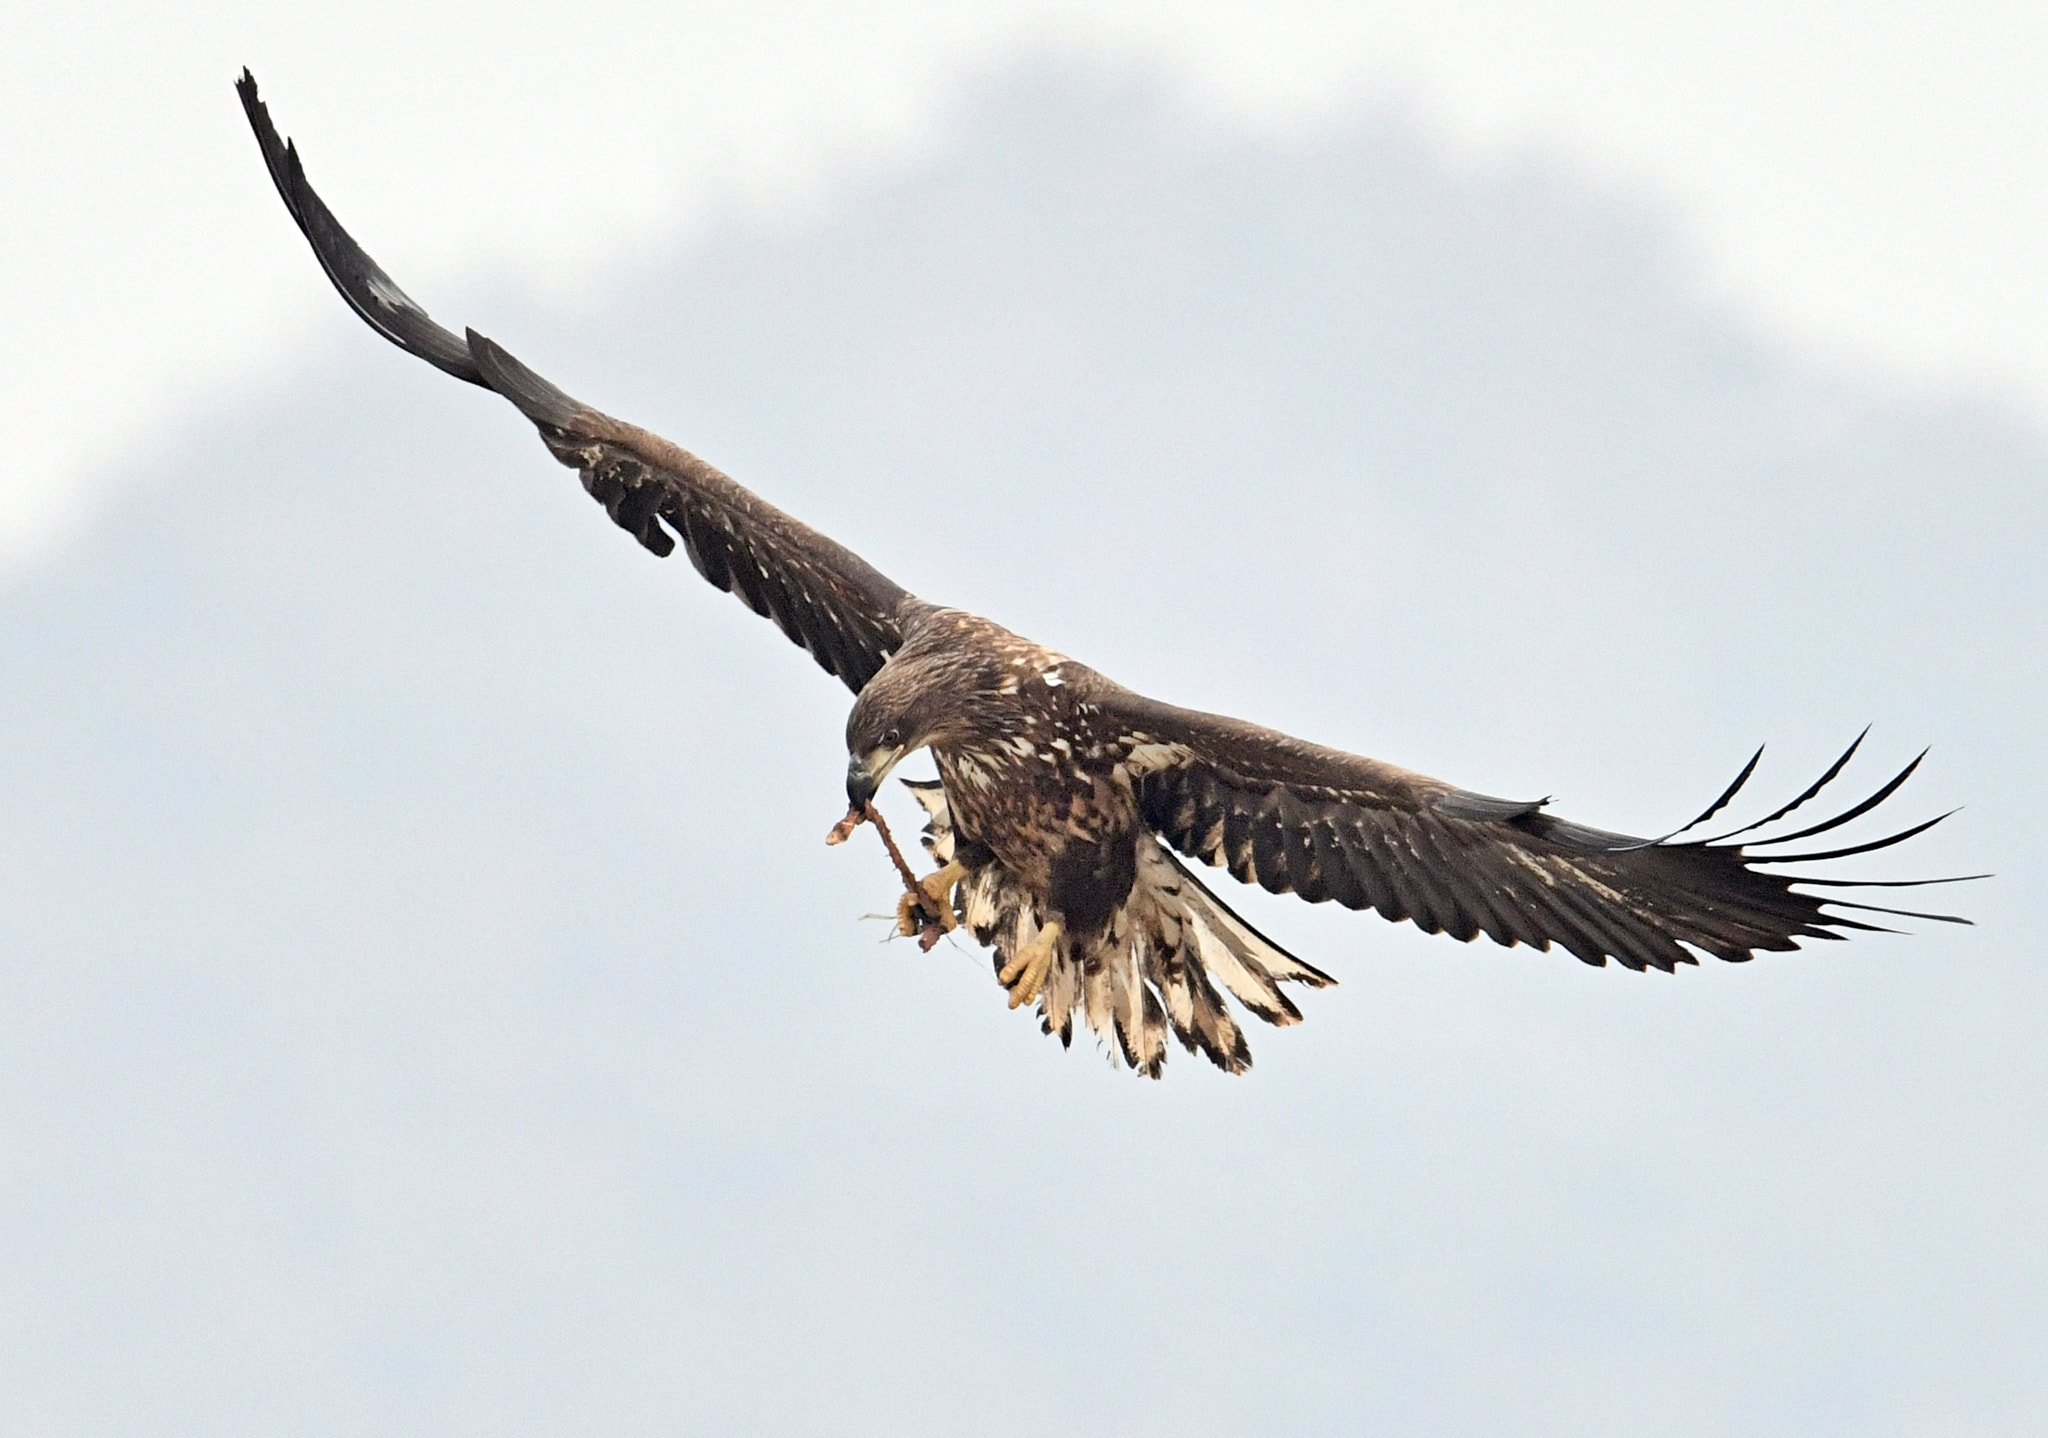 Nikon D850 sample photo. White tailed sea eagle photography